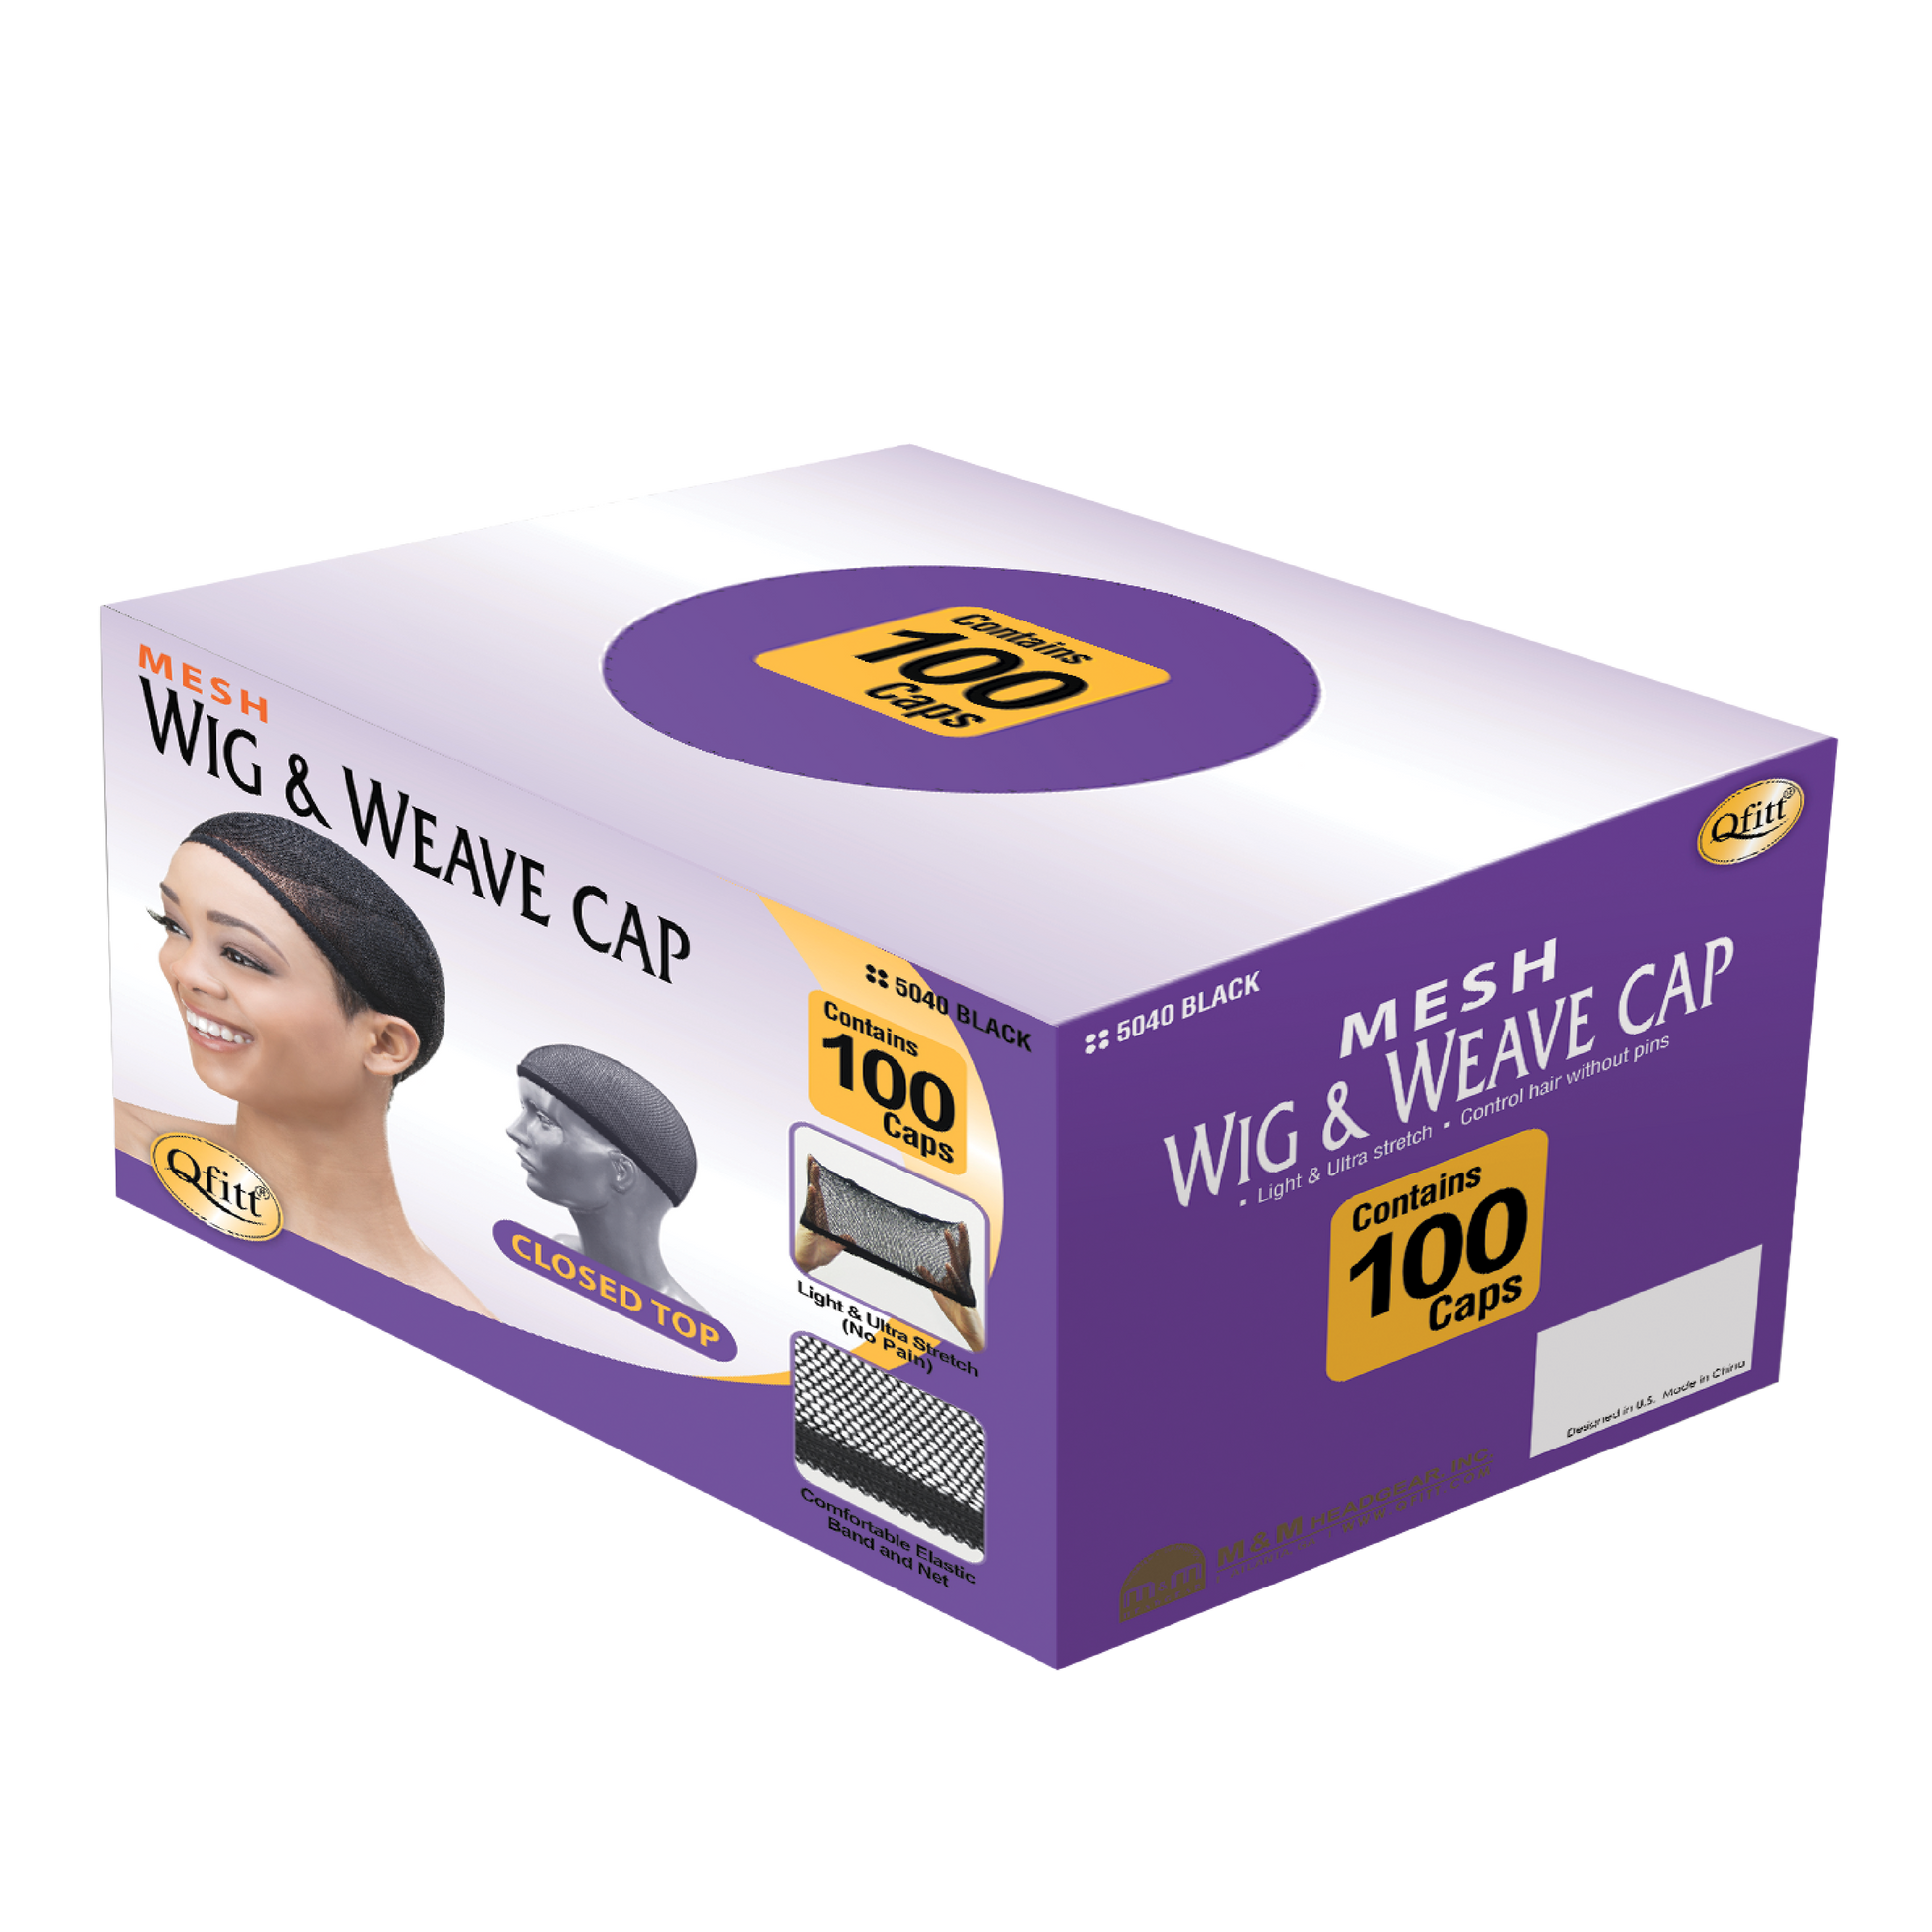 Qfitt Black Wig Cap #100 - Apex Beauty Supply